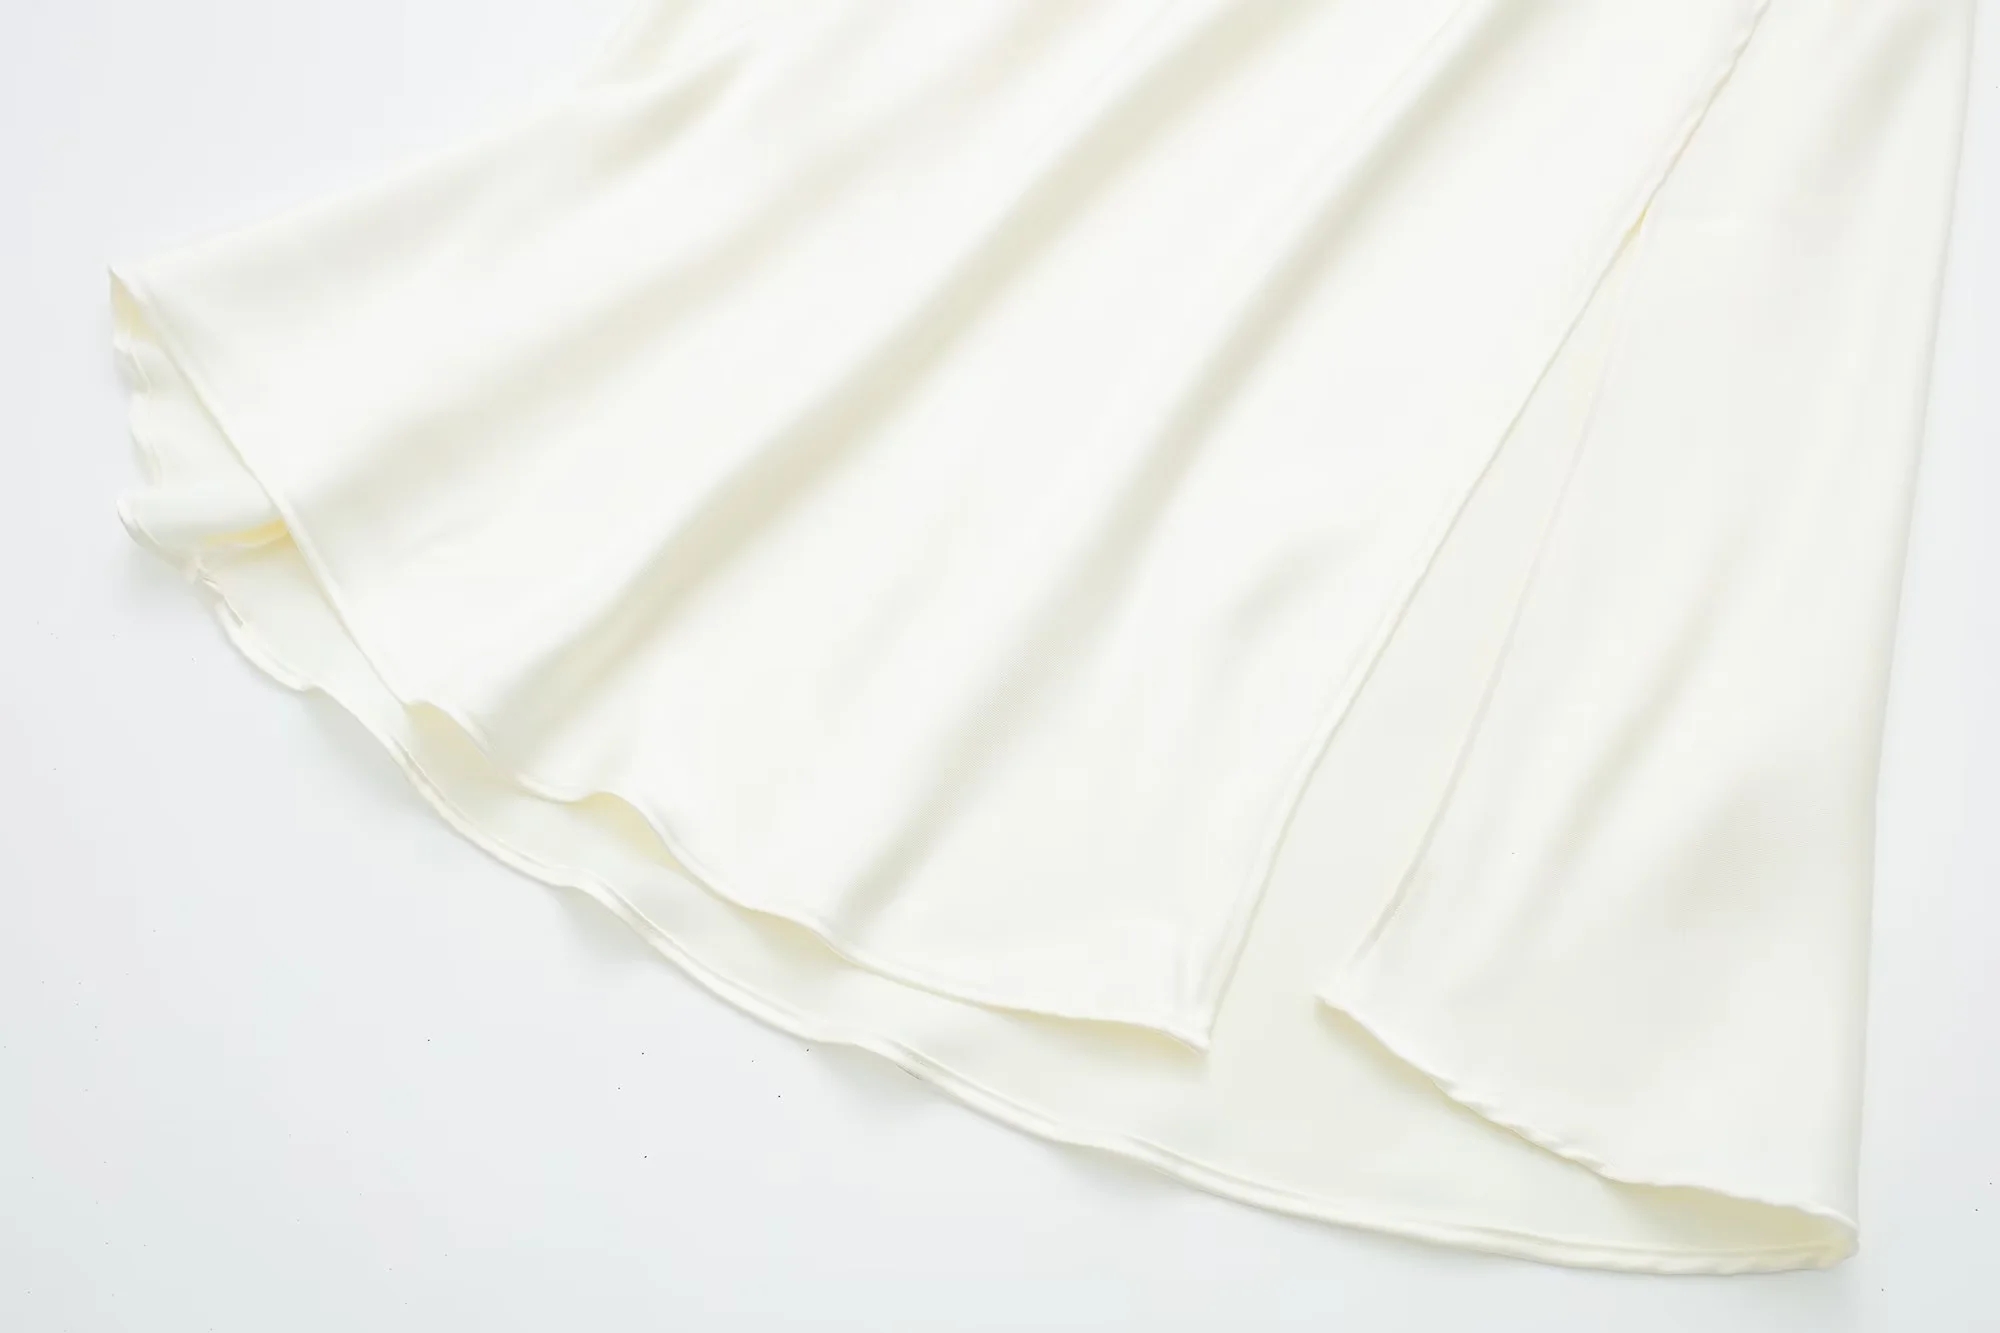 Fashion White Satin-blend Glossy Skirt,Skirts